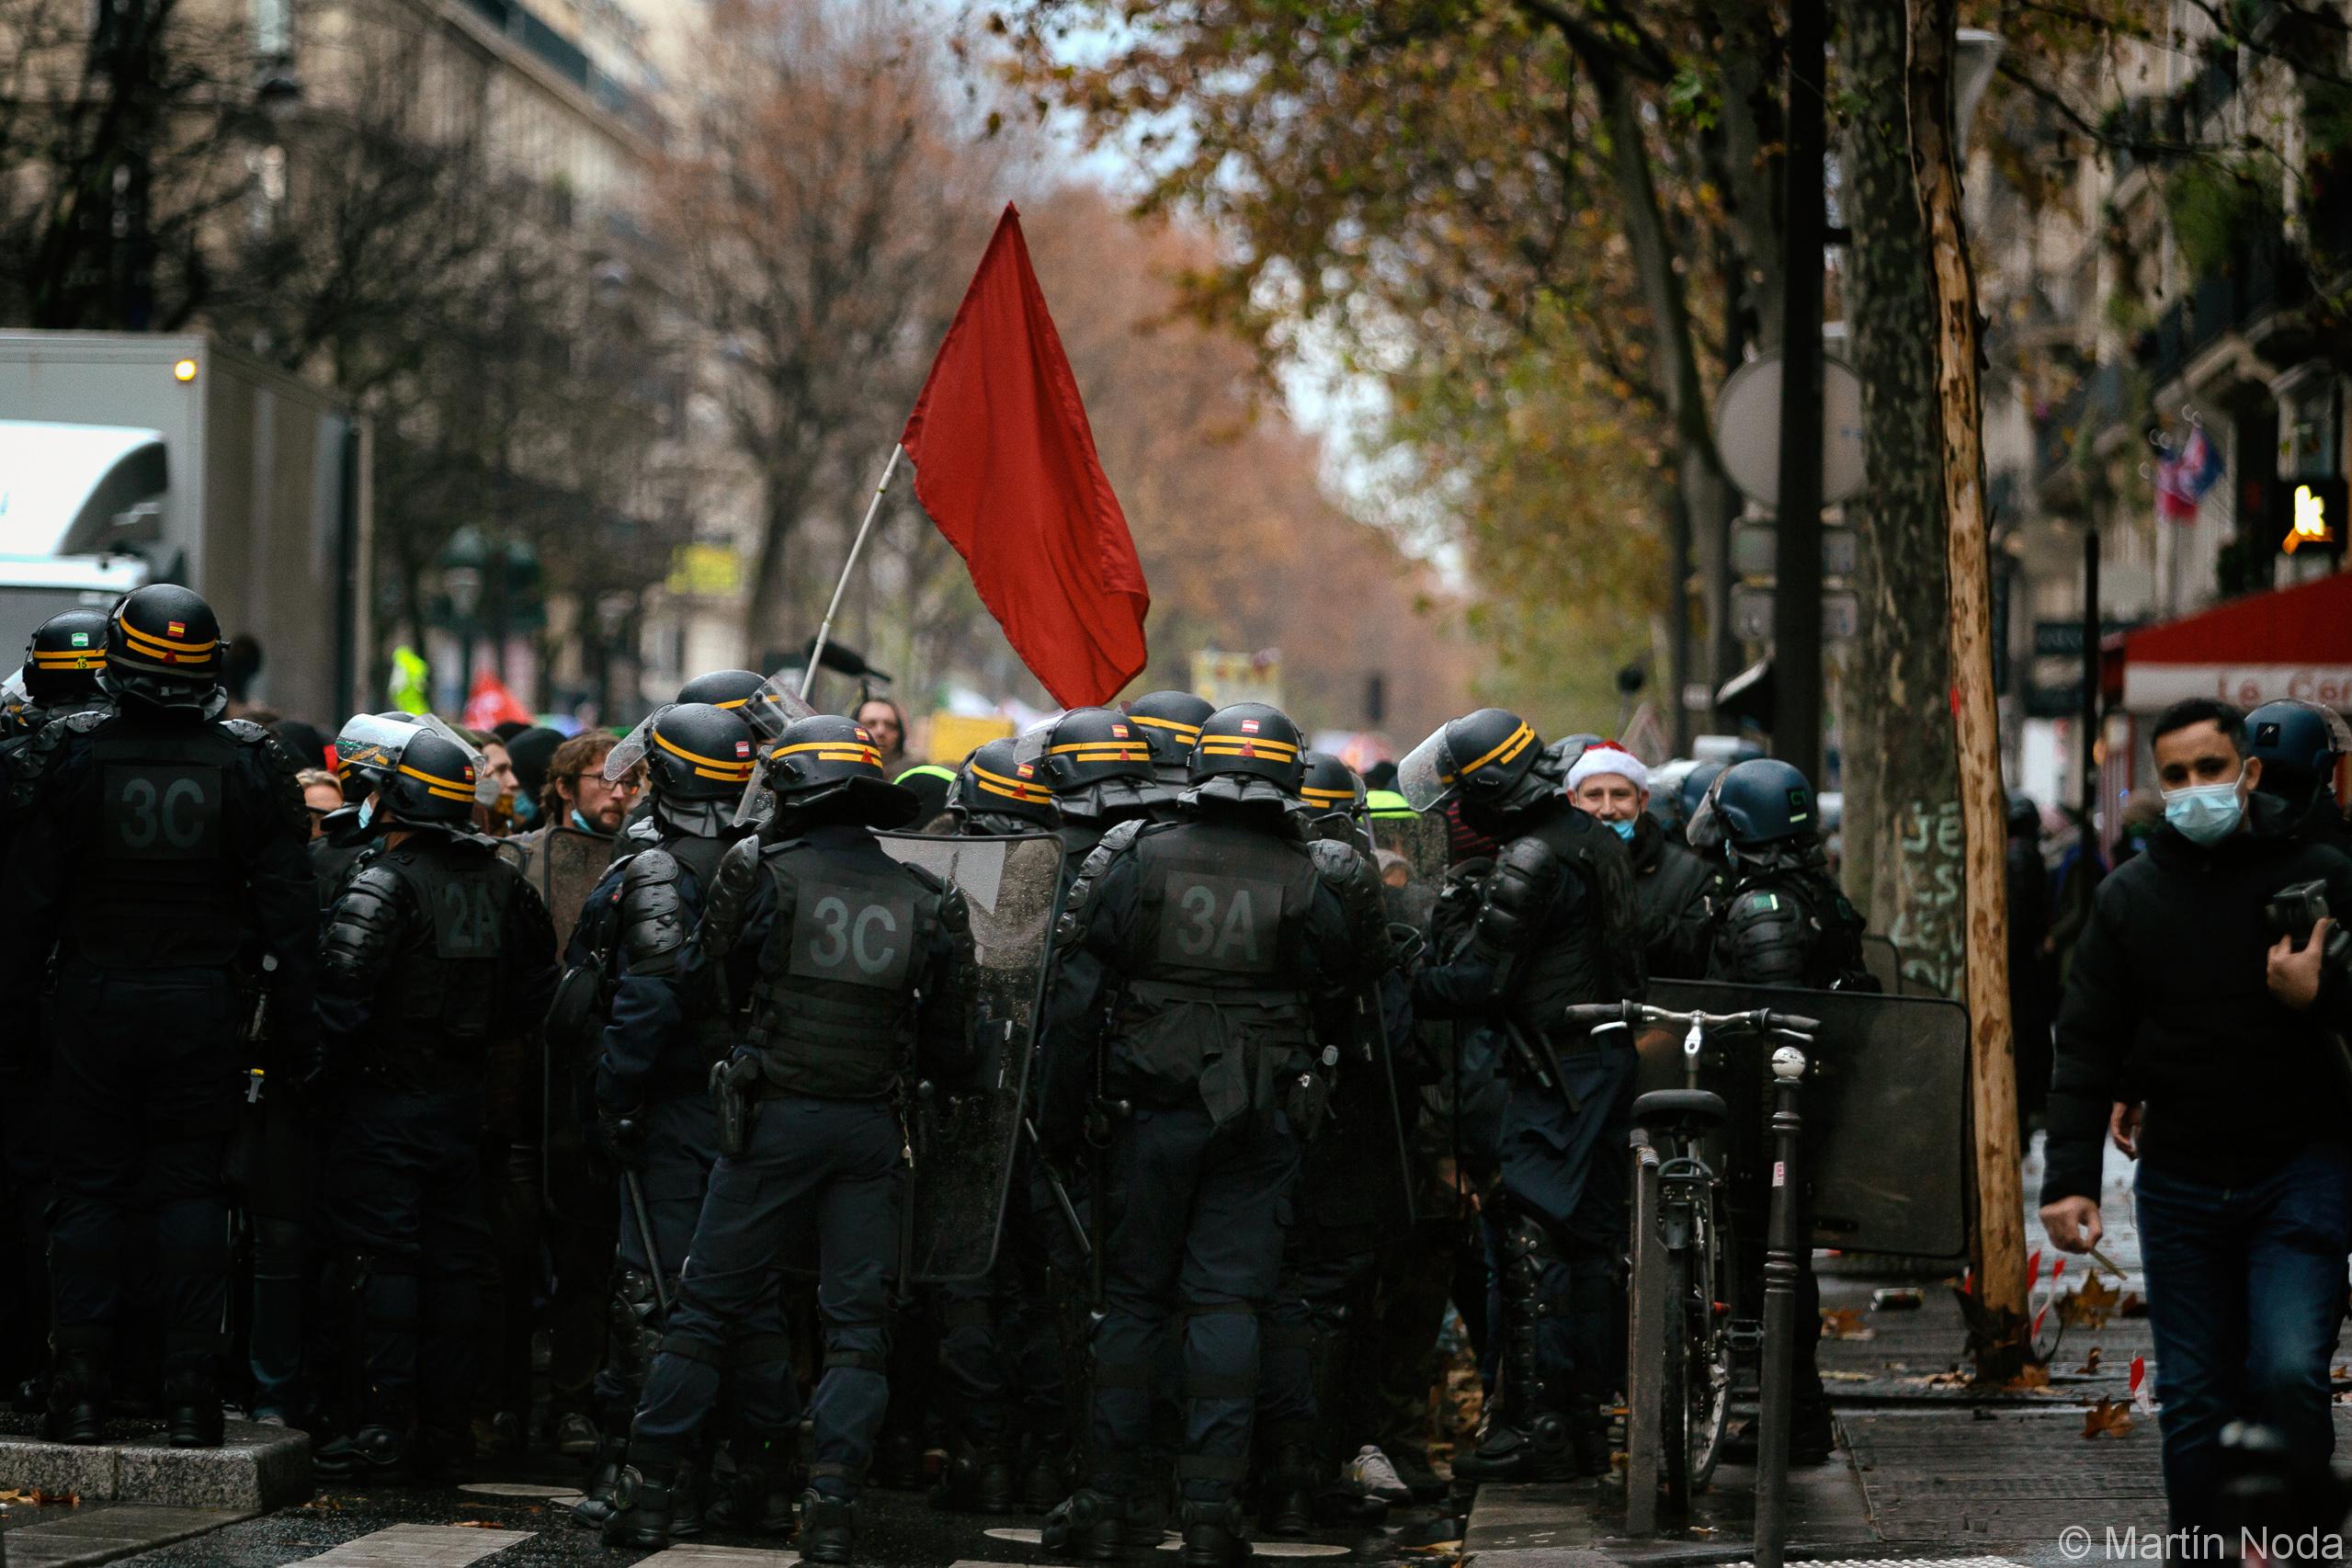  La police empêche les manifestants d'avancer, manifestation contre les lois séparatismes et de sécurité globale, Paris, 12 décembre 2020. 